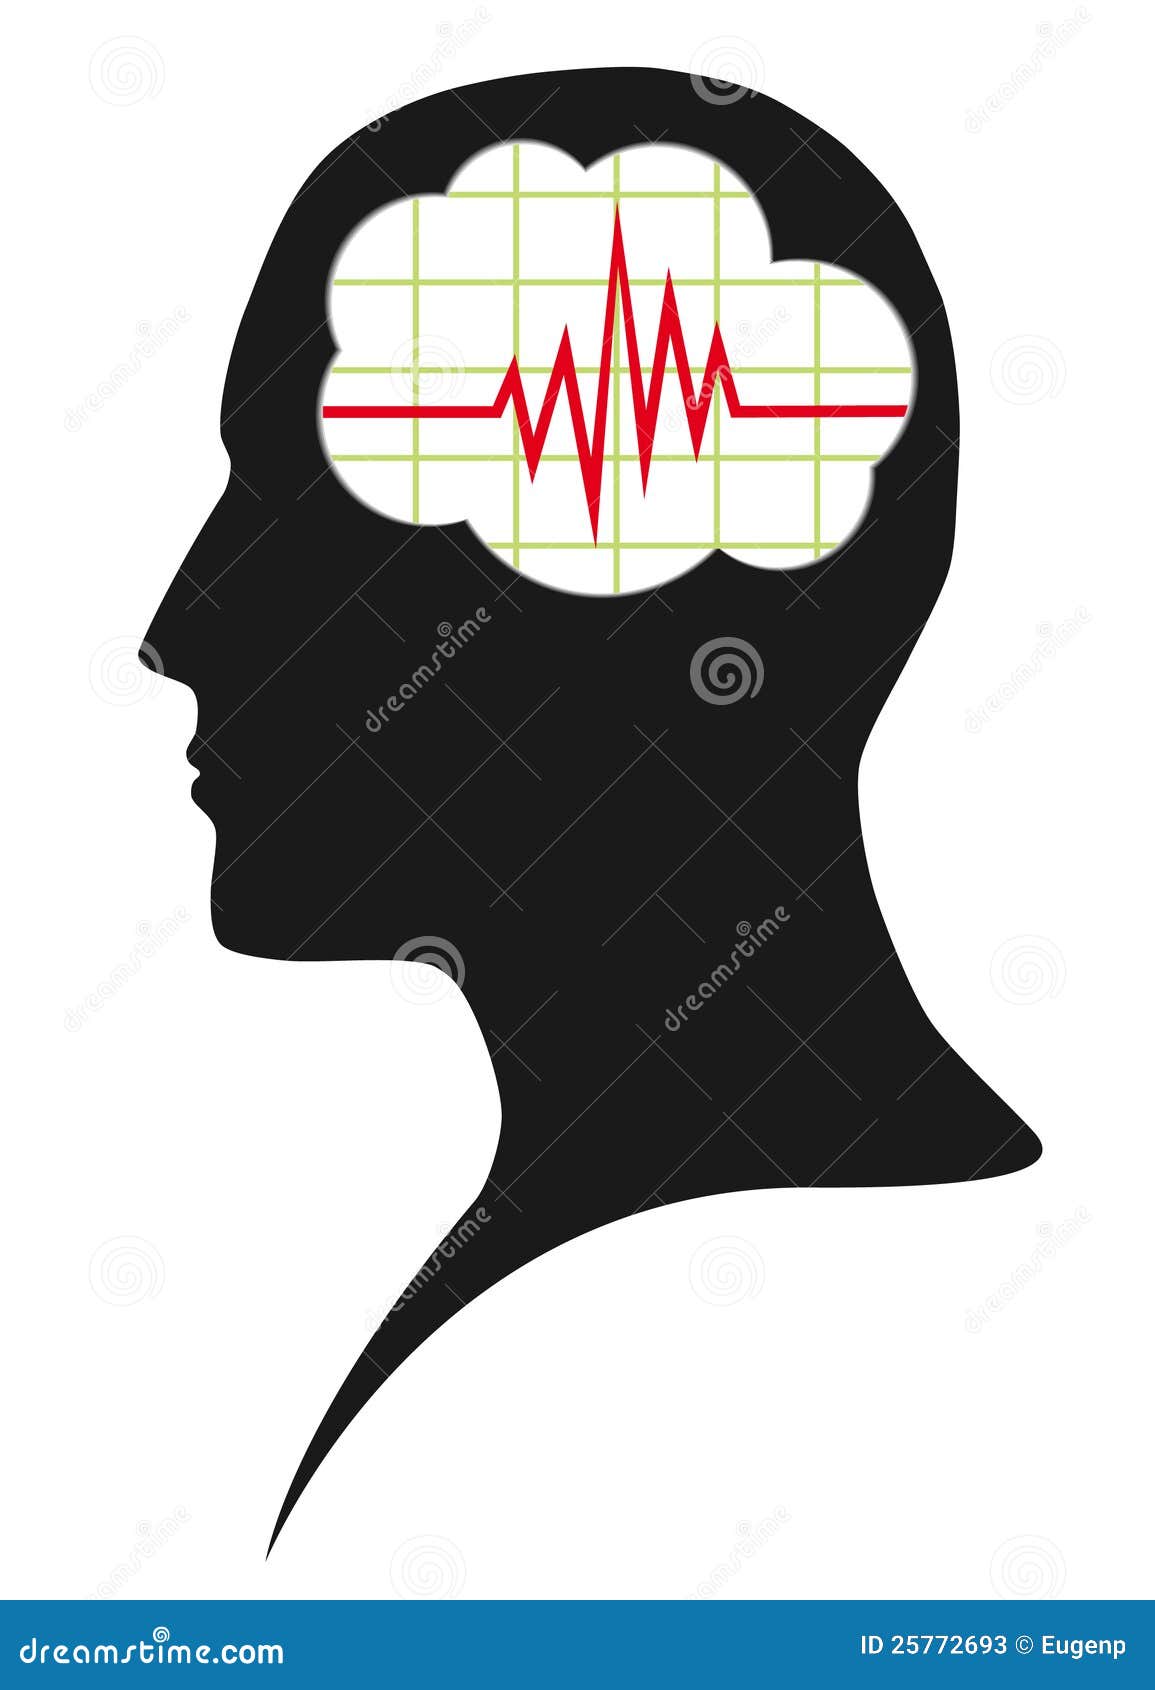 Diagram van hersenenactiviteit in hoofd